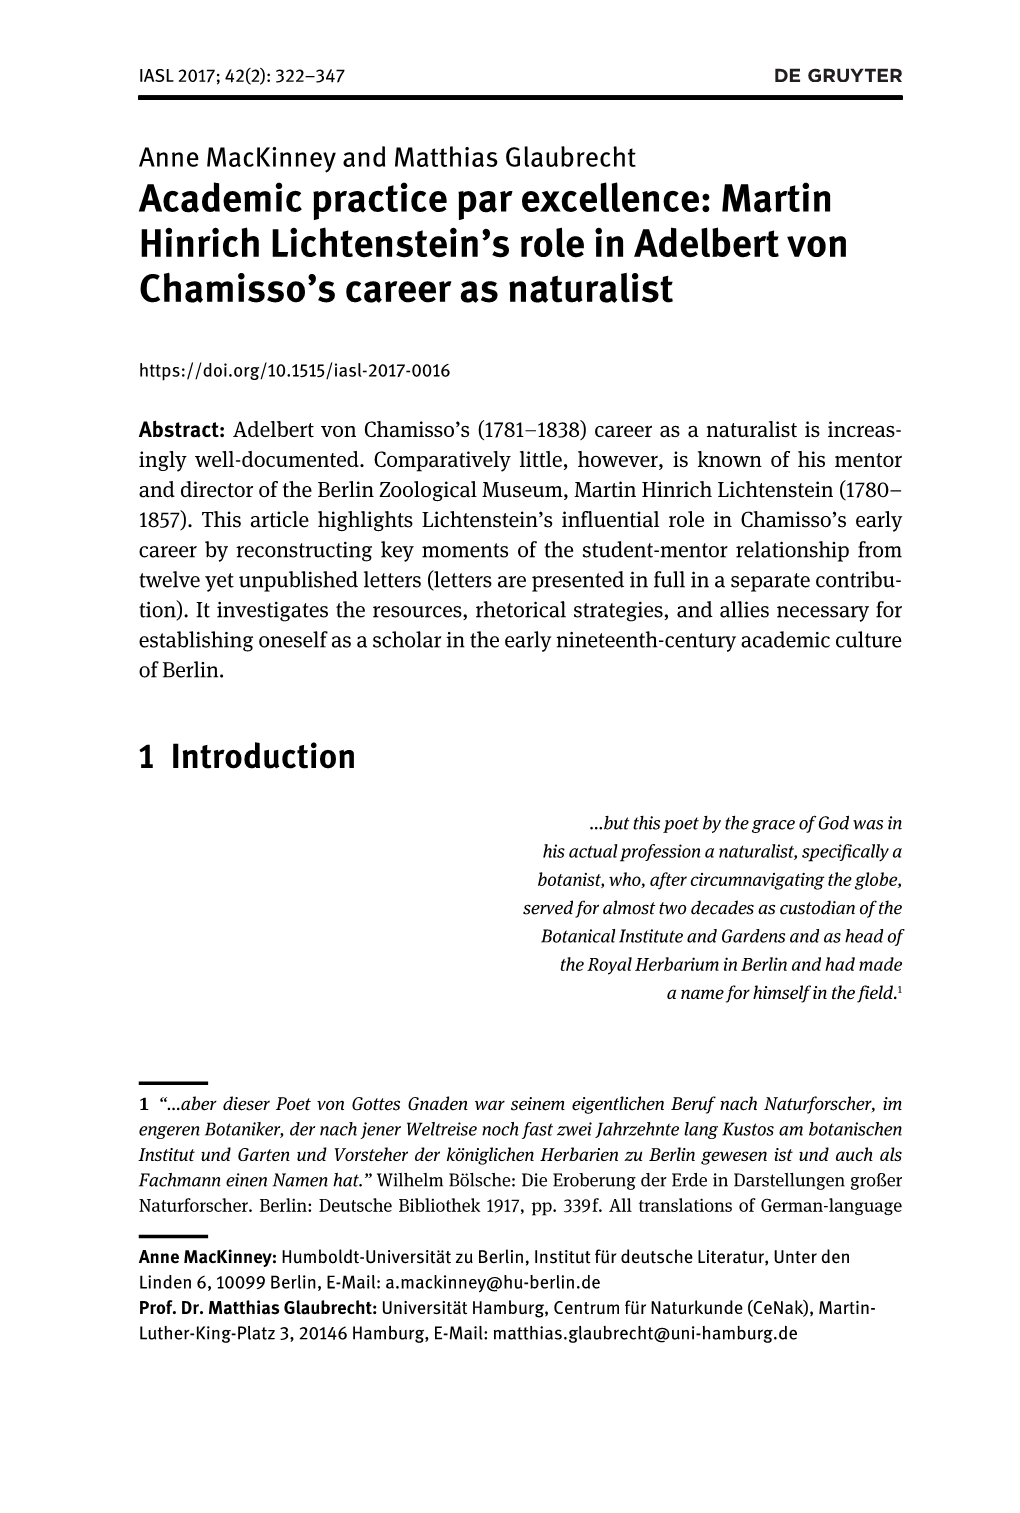 Martin Hinrich Lichtenstein’S Role in Adelbert Von Chamisso’S Career As Naturalist